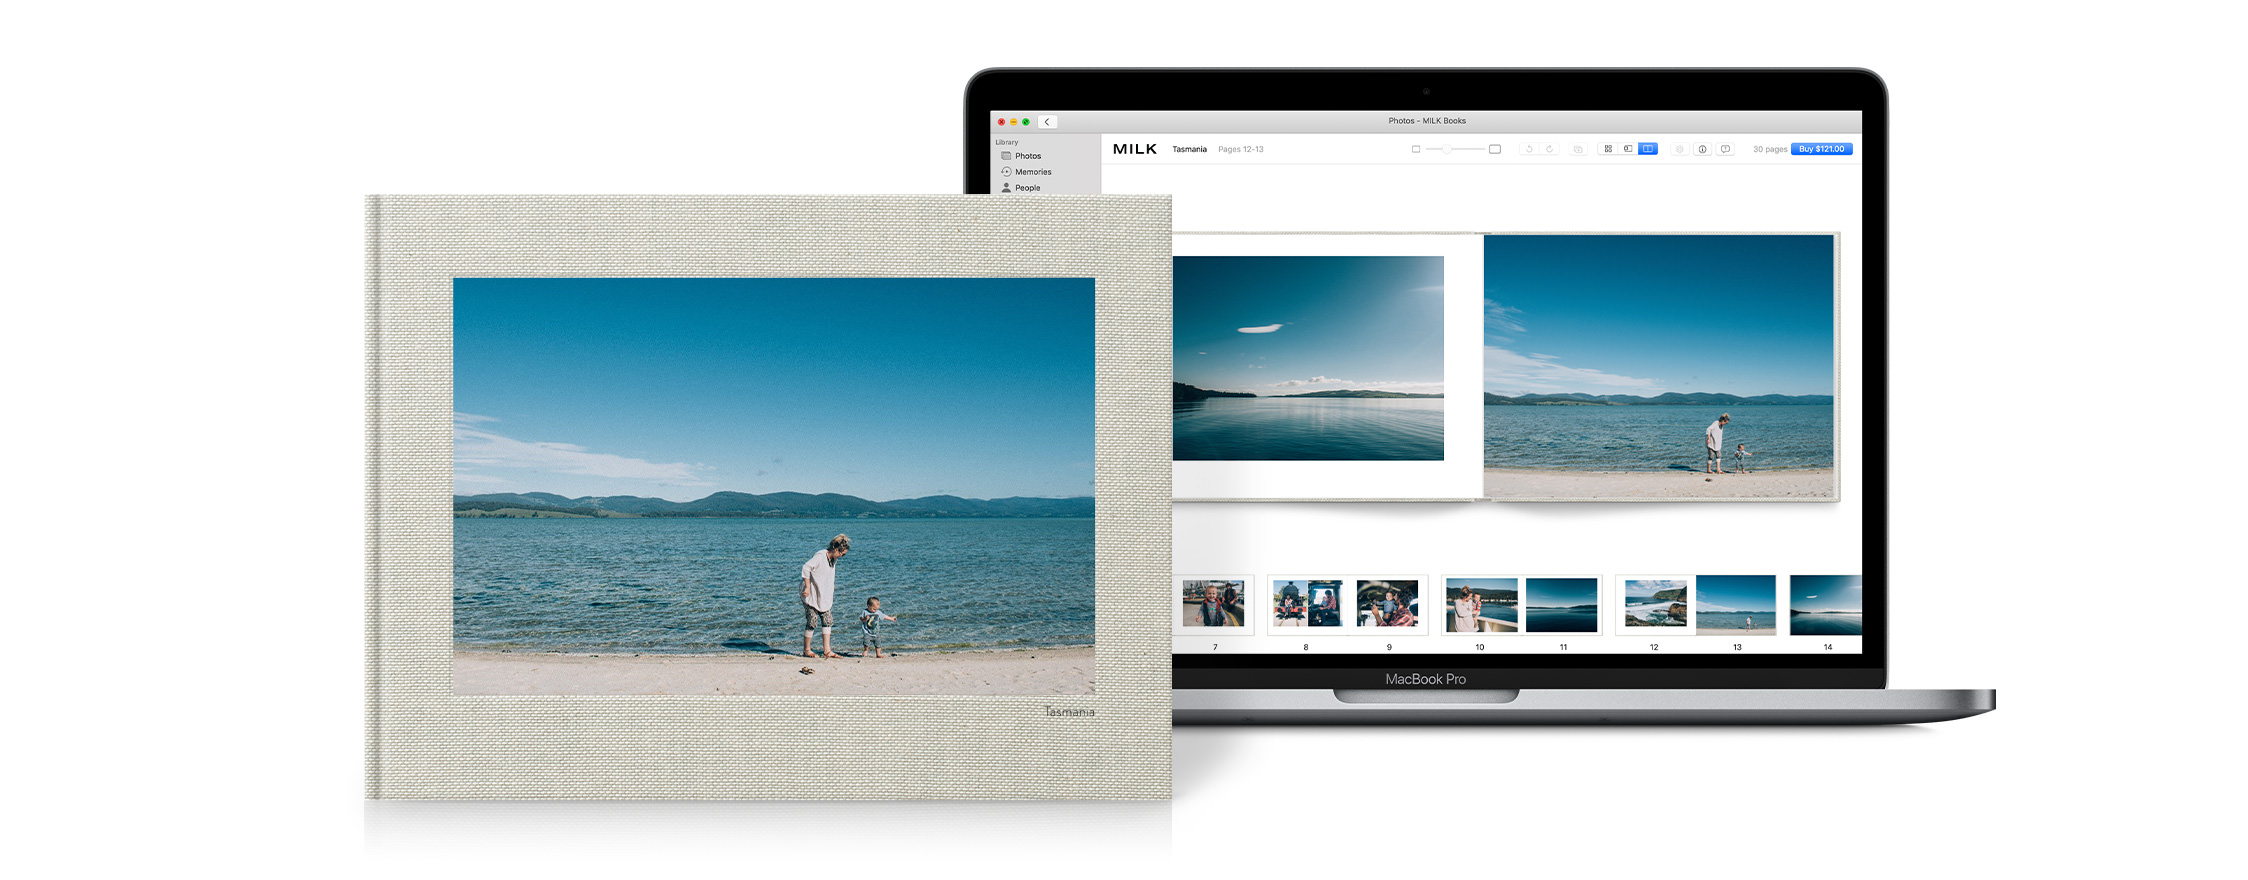 Macbook abierto para mostrar la extensión del proyecto para Apple Photos. Fotolibro mostrando el producto terminado.